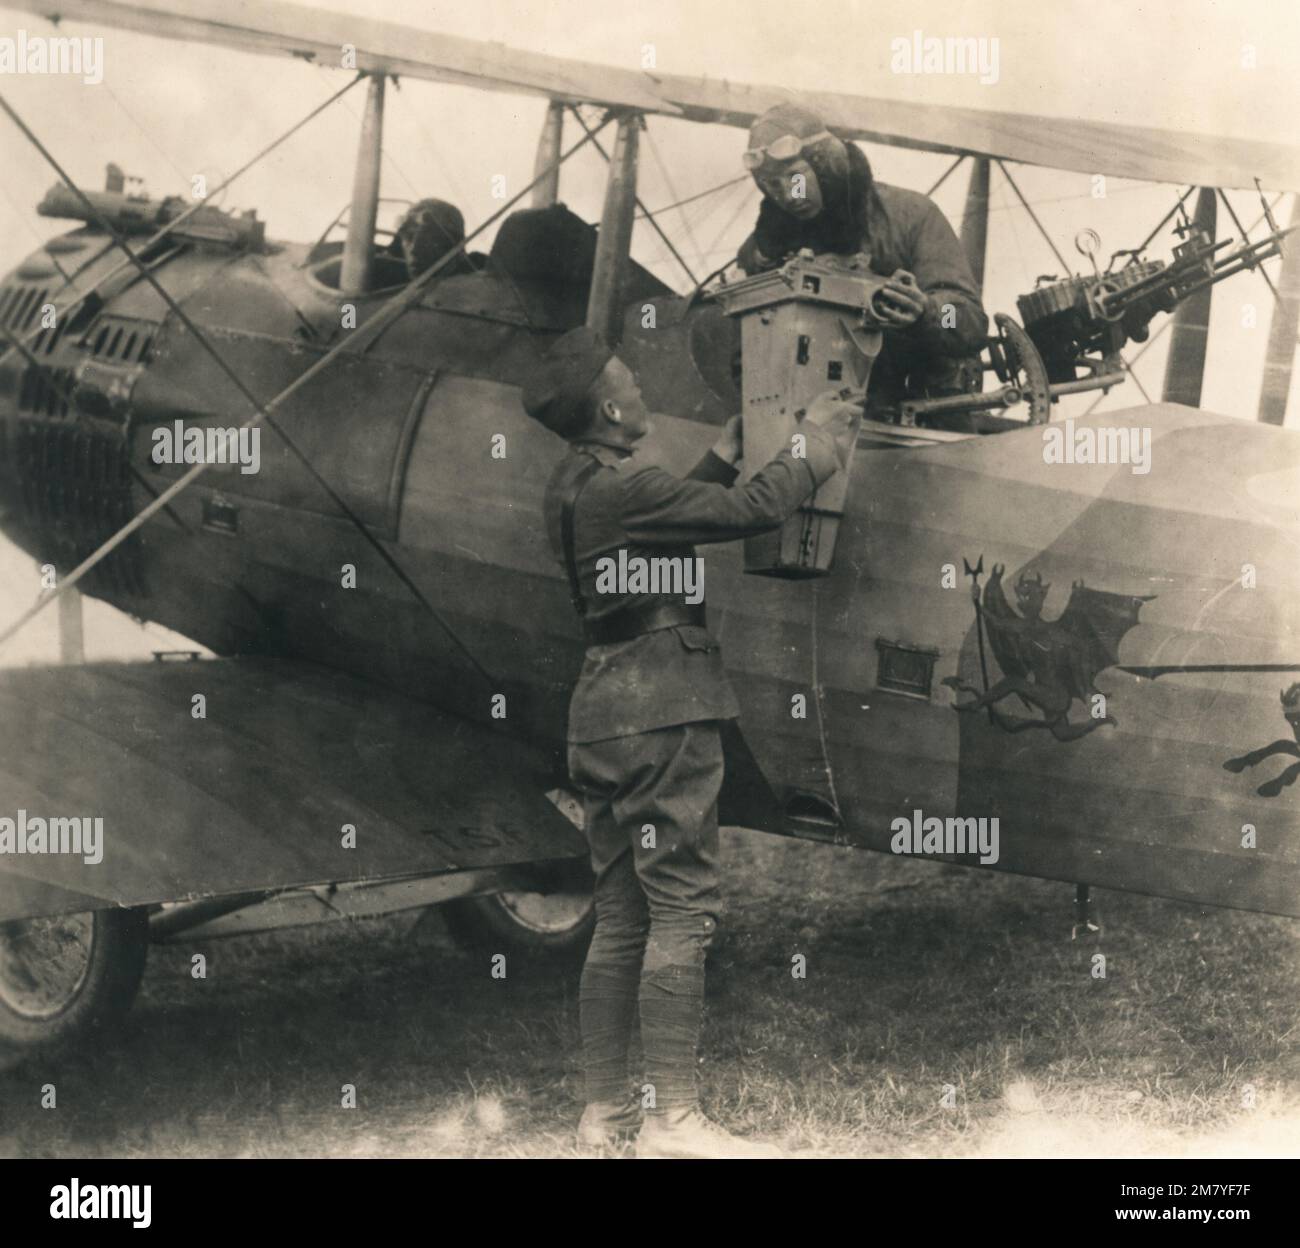 Foto d'epoca circa 1918 di un aereo da combattimento americano a due posti caricato con una fotocamera per il ricognizione fotografica sul fronte occidentale in Francia durante la prima guerra mondiale. L'aereo è un Salmson 2A2 del maggiore John Reynolds, comandante del 91st Aero Squadron Foto Stock